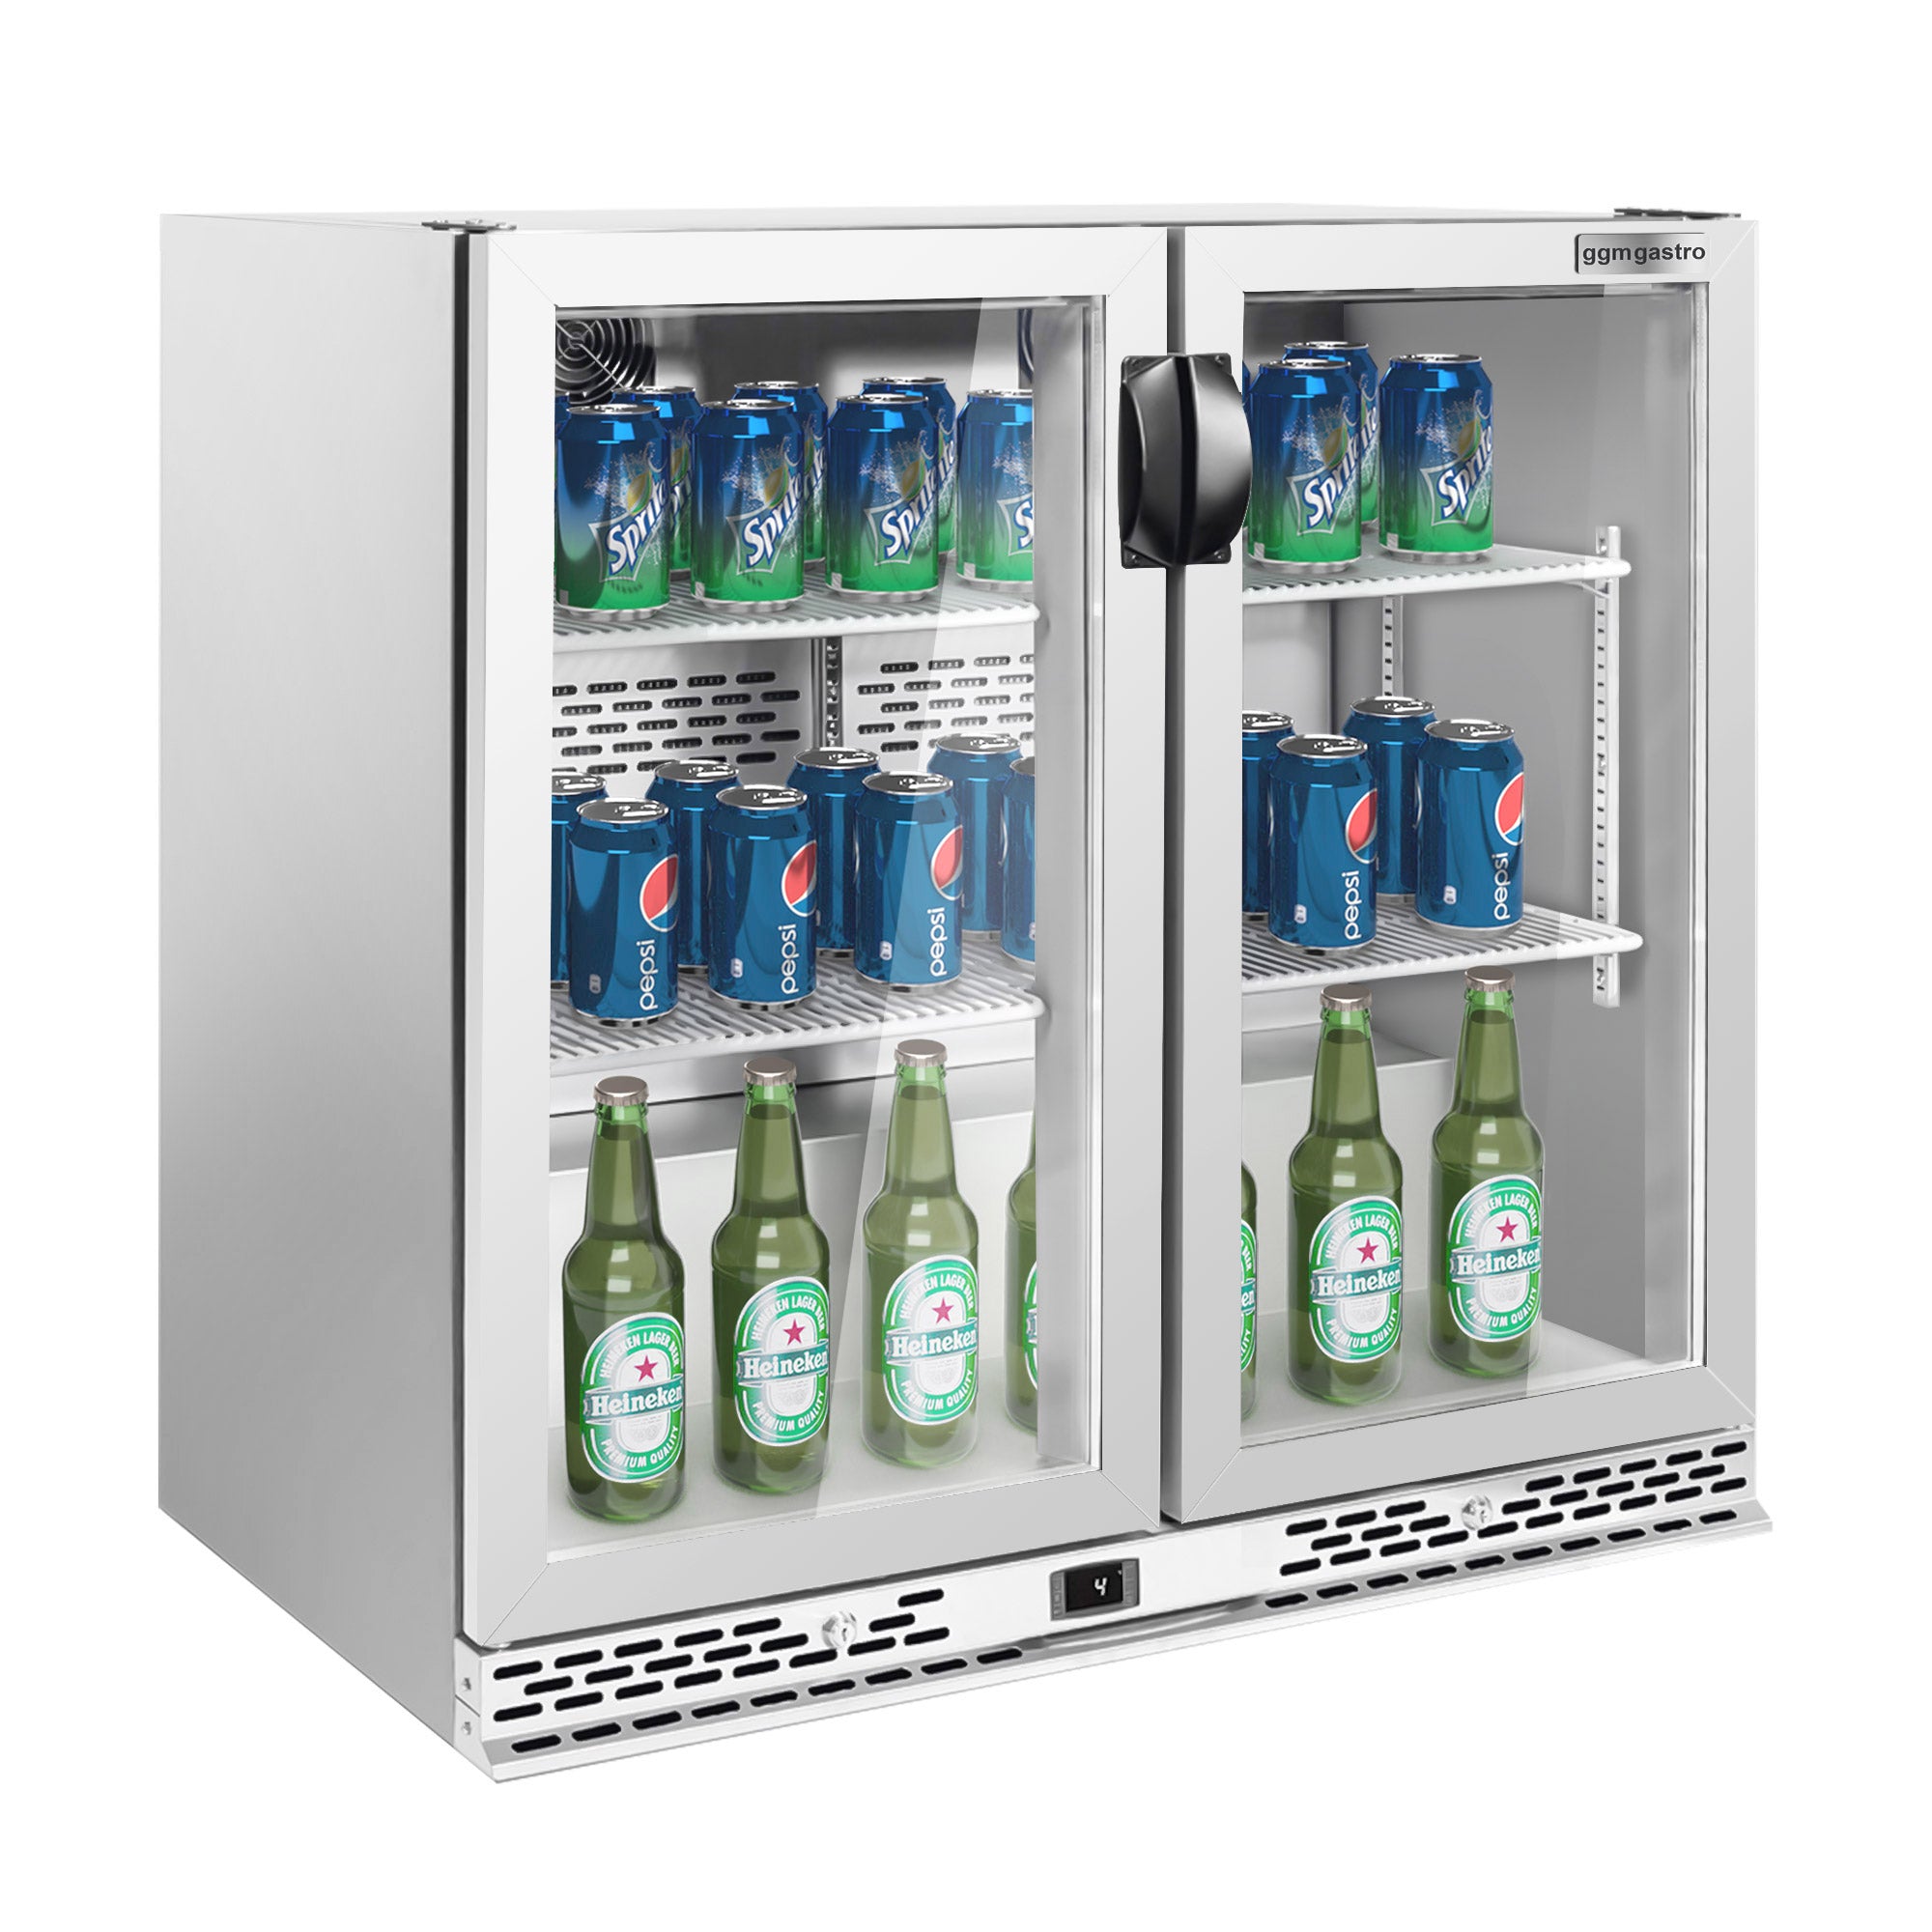 Барова хладилна маса за напитки 220 литра - с 2 стъклена врати (неръждаема стомана)